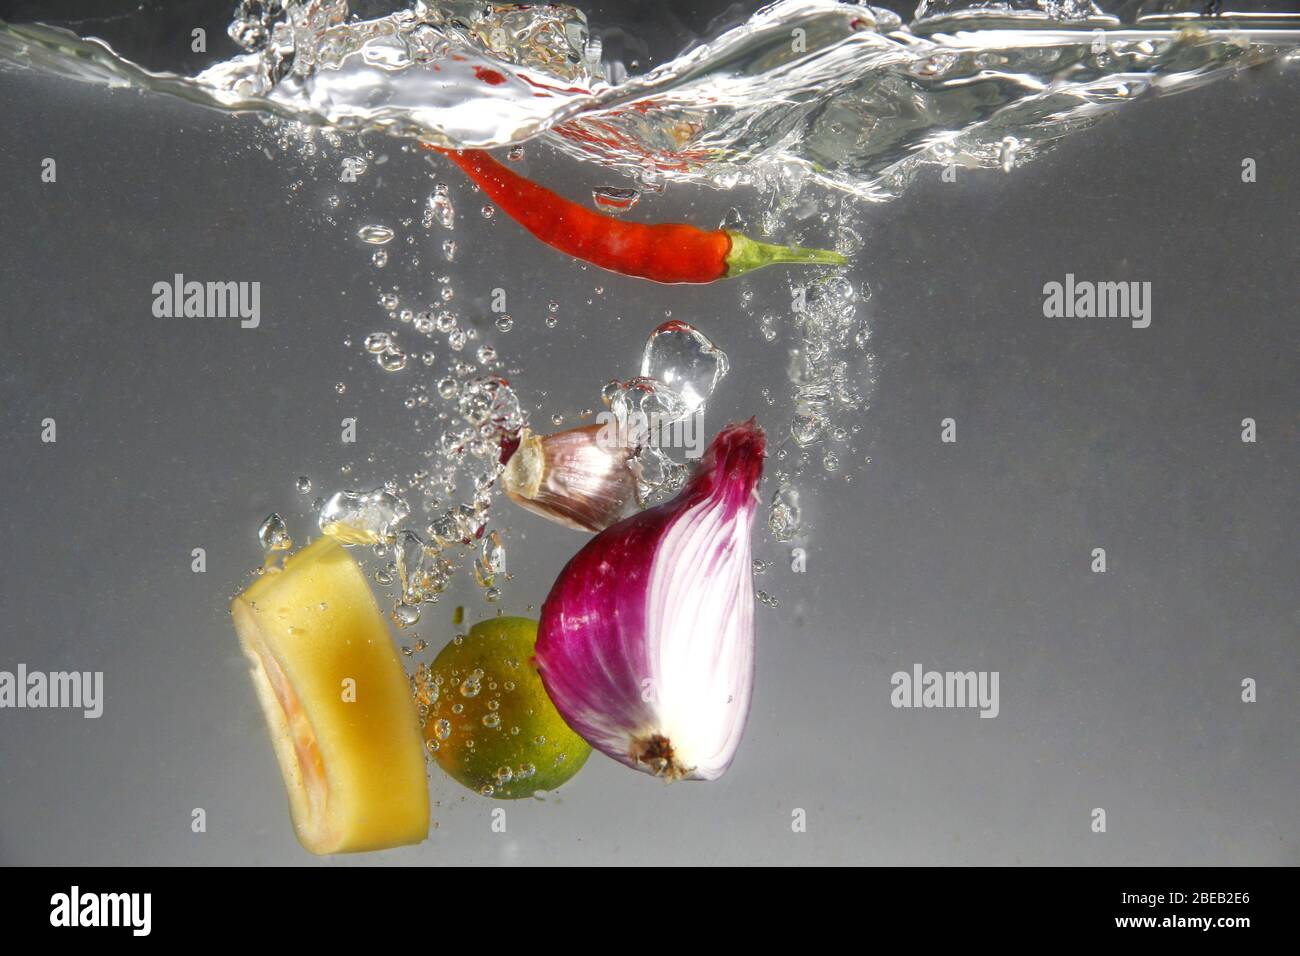 Photo de l'oignon rouge, du piment rouge, de l'ail, de la tomate et du calamansi dans l'eau Banque D'Images